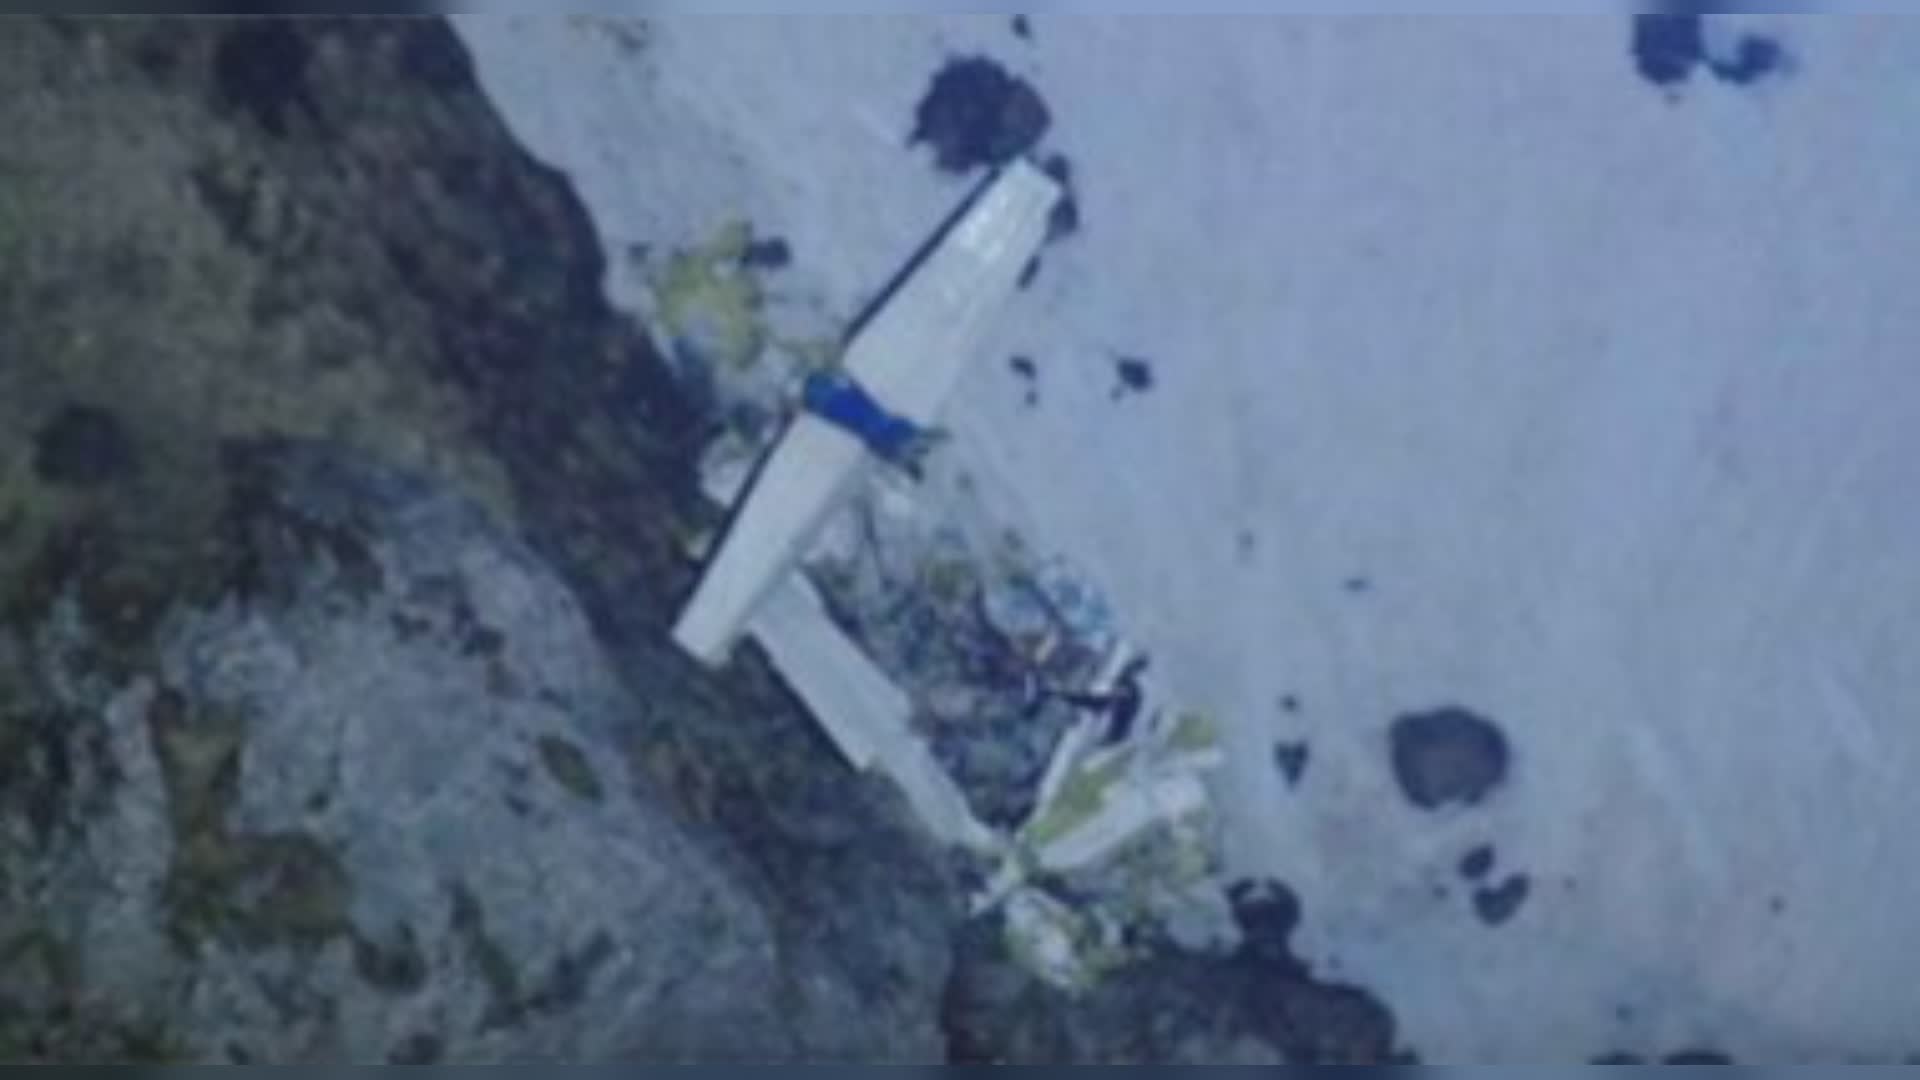 Pilota disperso in Svizzera, droni vedono aereo in canalone